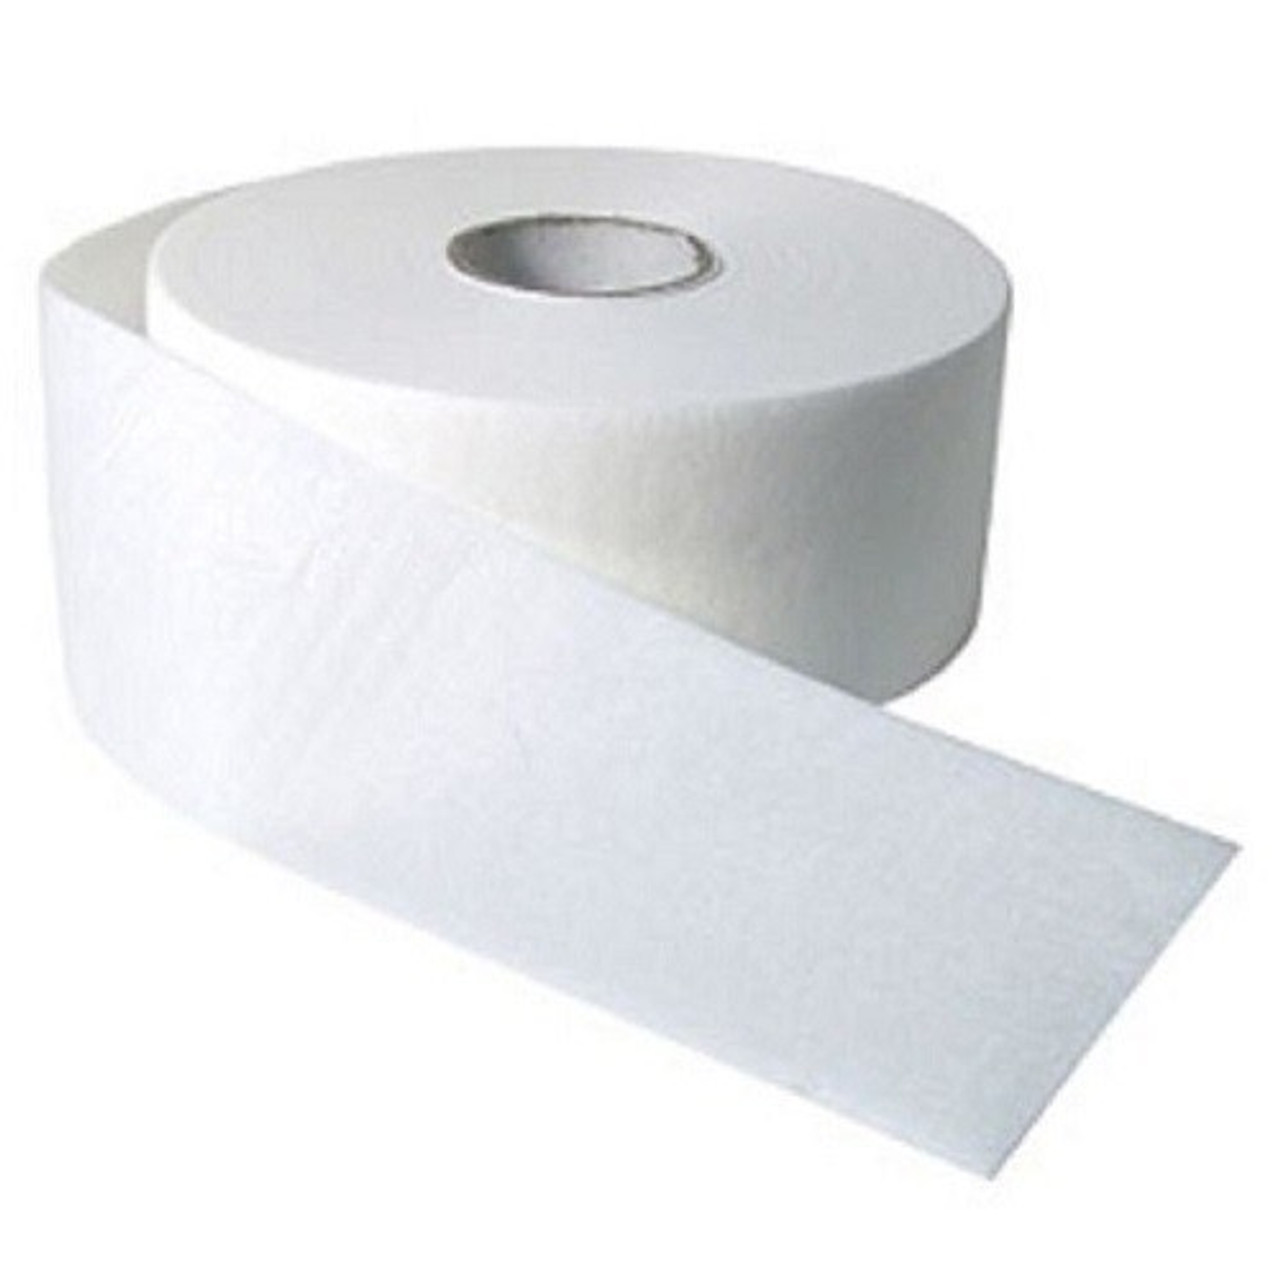 Sena Disposables Waxing Paper Rolls - Spa Source